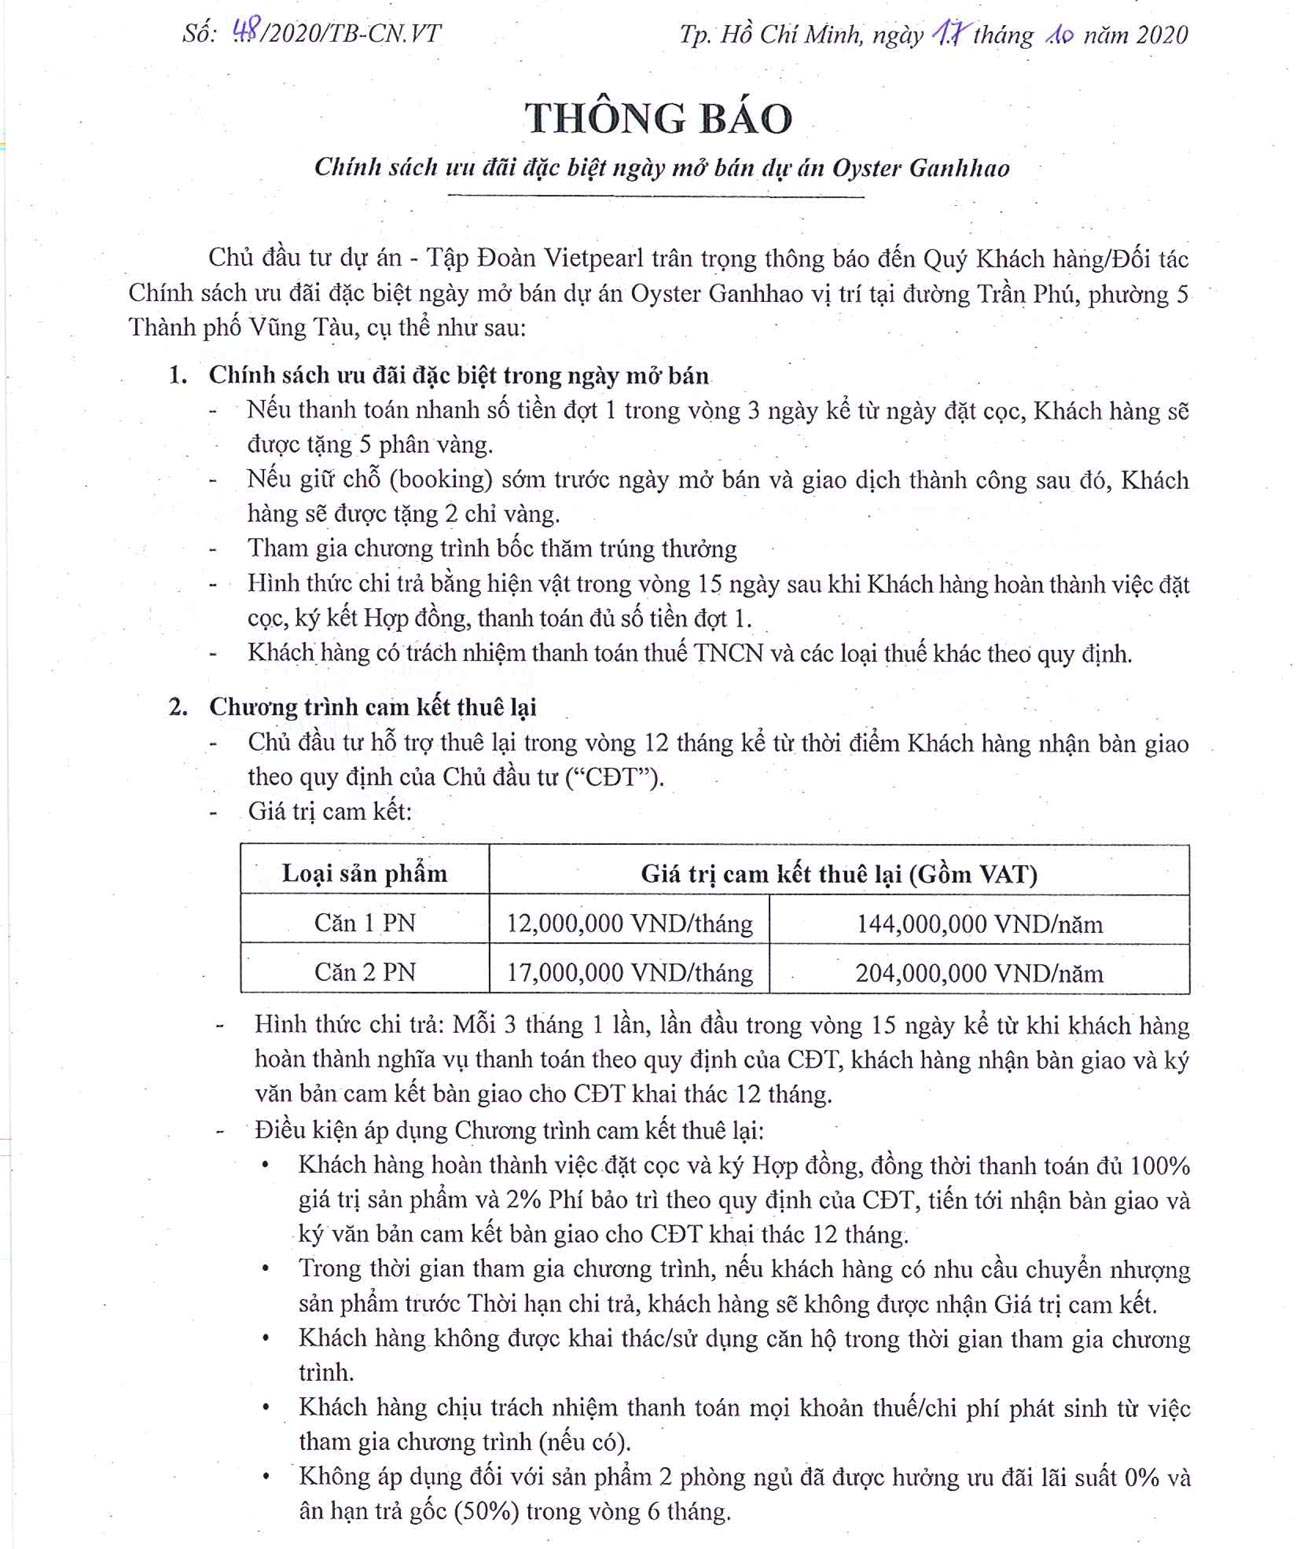 Chính sách ưu đãi mở bán căn hộ Oyster Gành Hào Vũng Tàu 10/2020